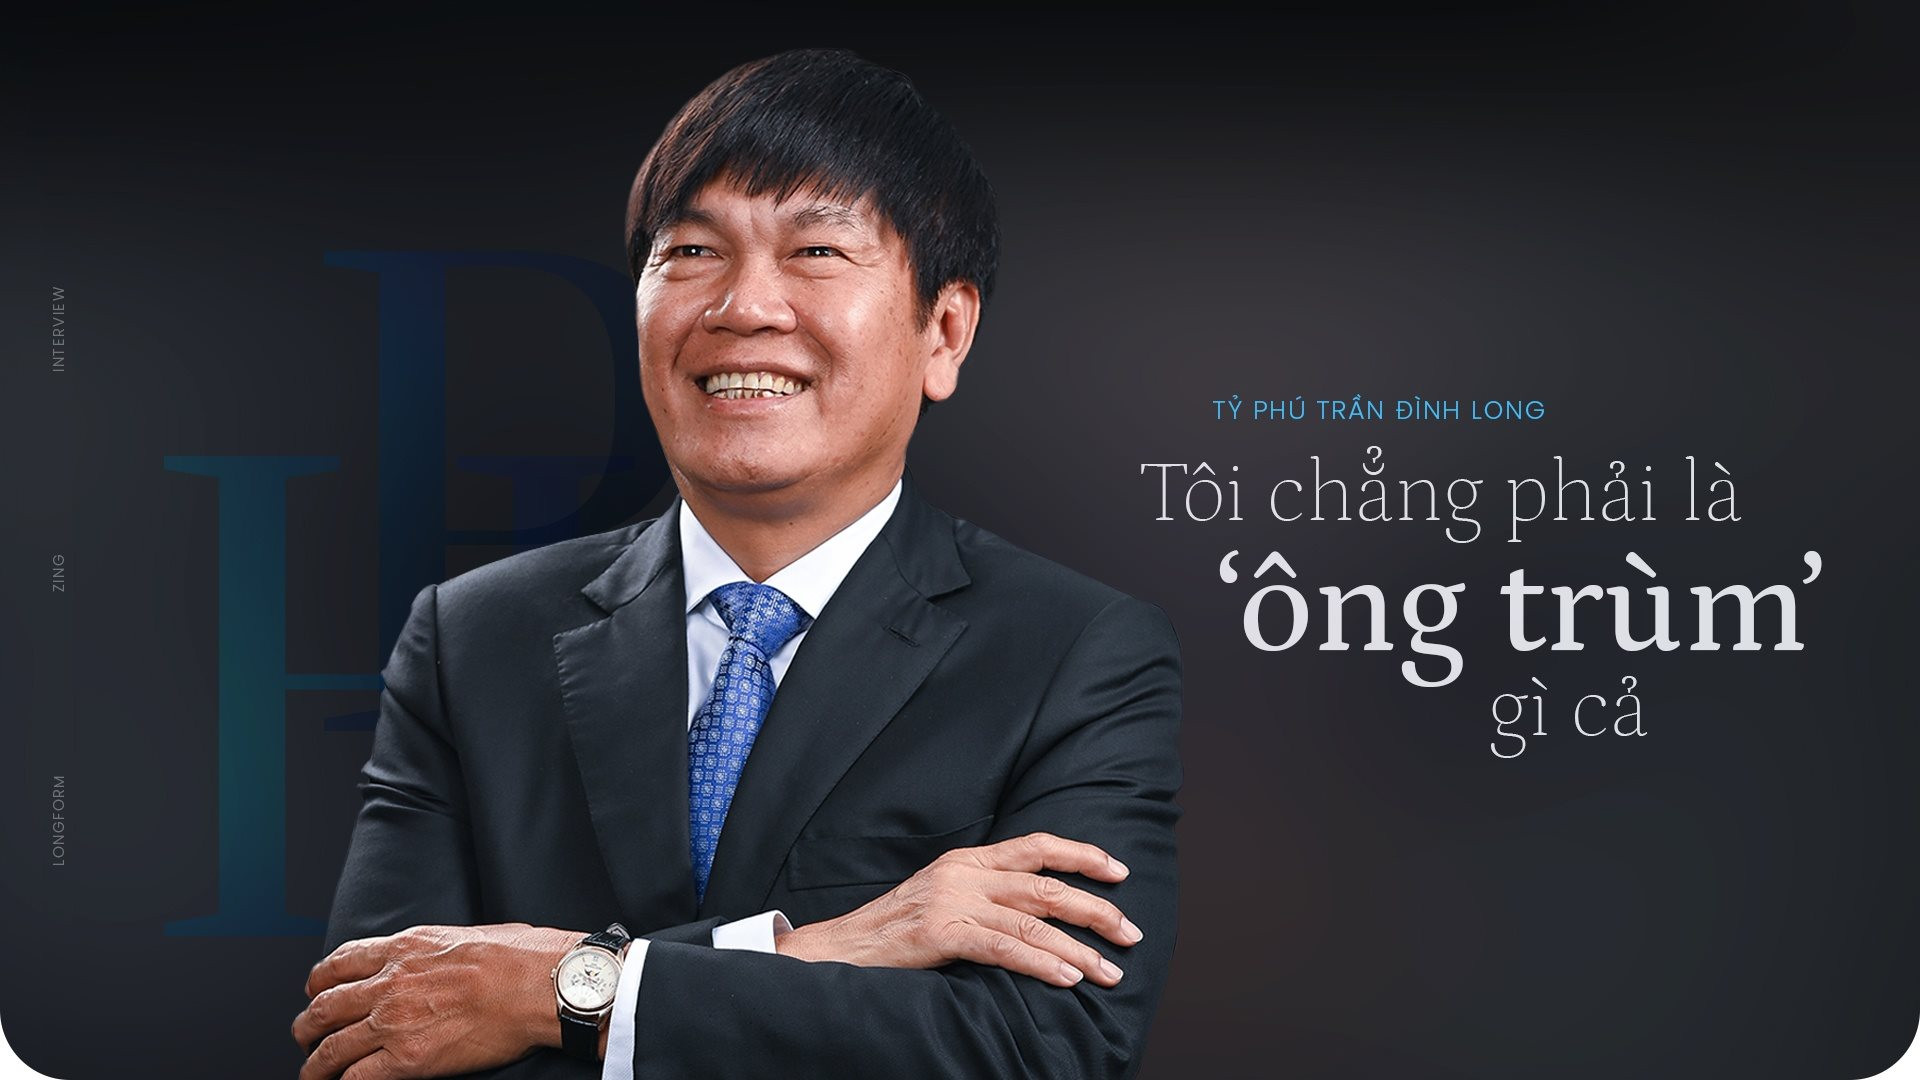 Giữa lúc hàng loạt DN bất động sản “chùn tay” do khát vốn, Vua thép Trần Đình Long ung dung trở thành nhà đầu tư duy nhất của những DA hàng nghìn tỷ đồng